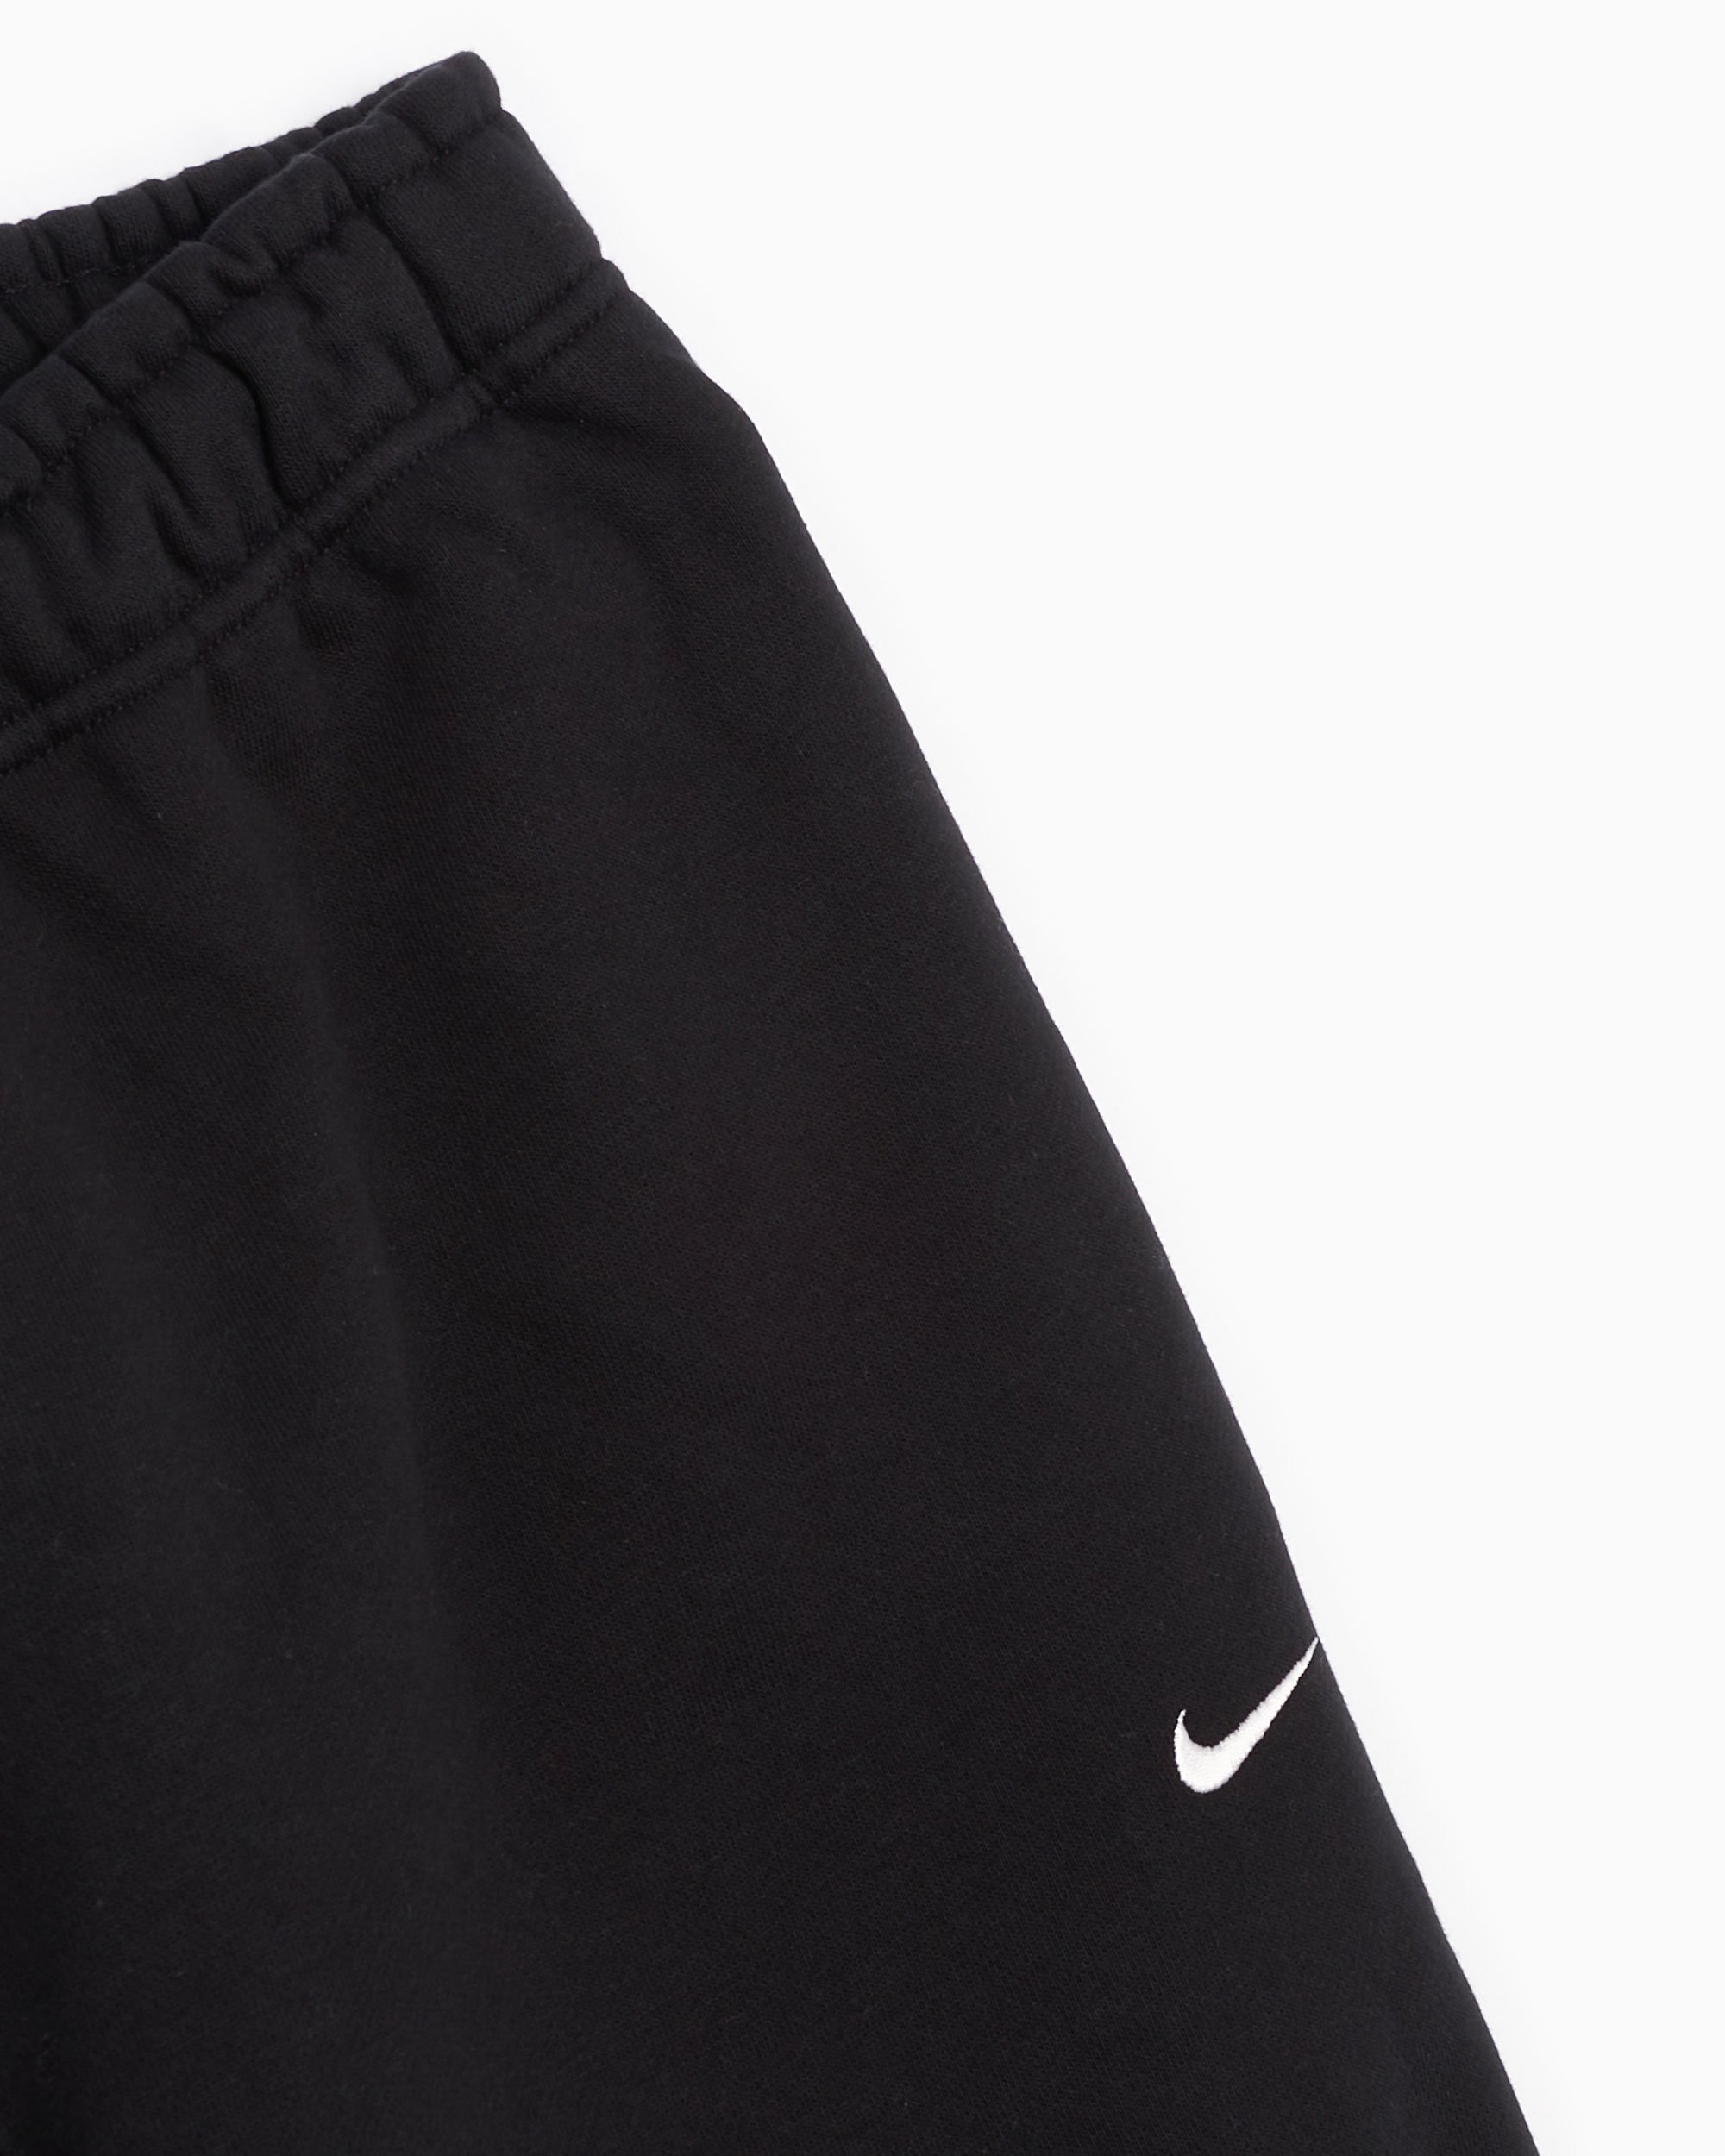 Nike NRG Solo Swoosh Women's Fleece Pants, Black - CW5565-010 - XS, M, L,  XL